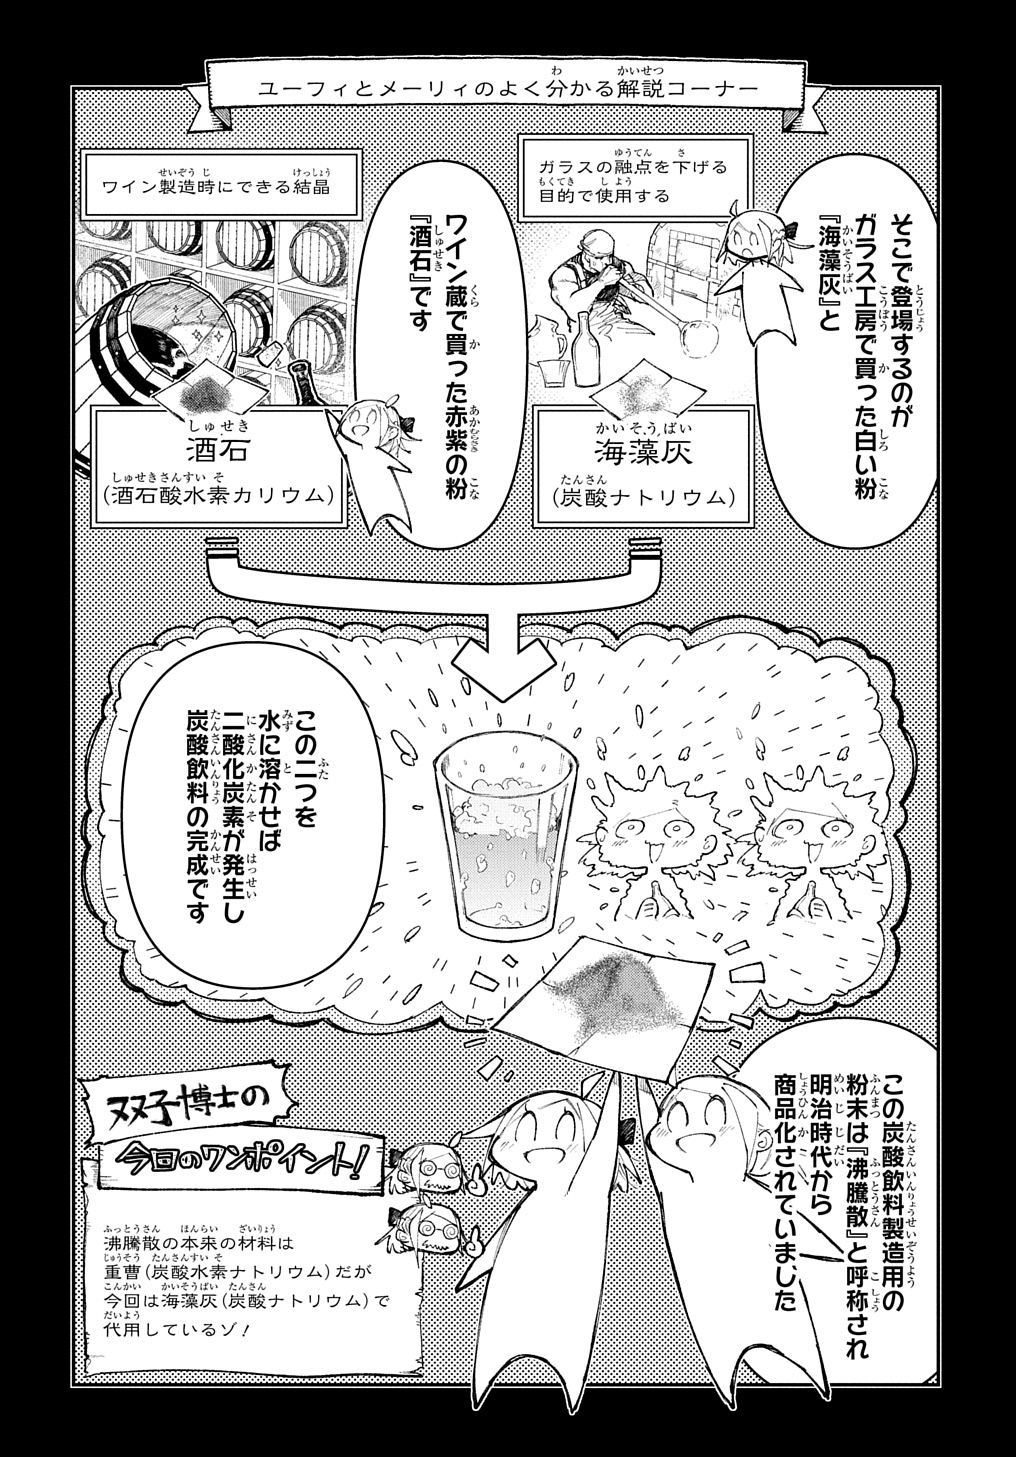 Juunenme, Kikan wo Akirameta Tenisha wa Imasara Shujinkou ni naru - Chapter 7 - Page 2